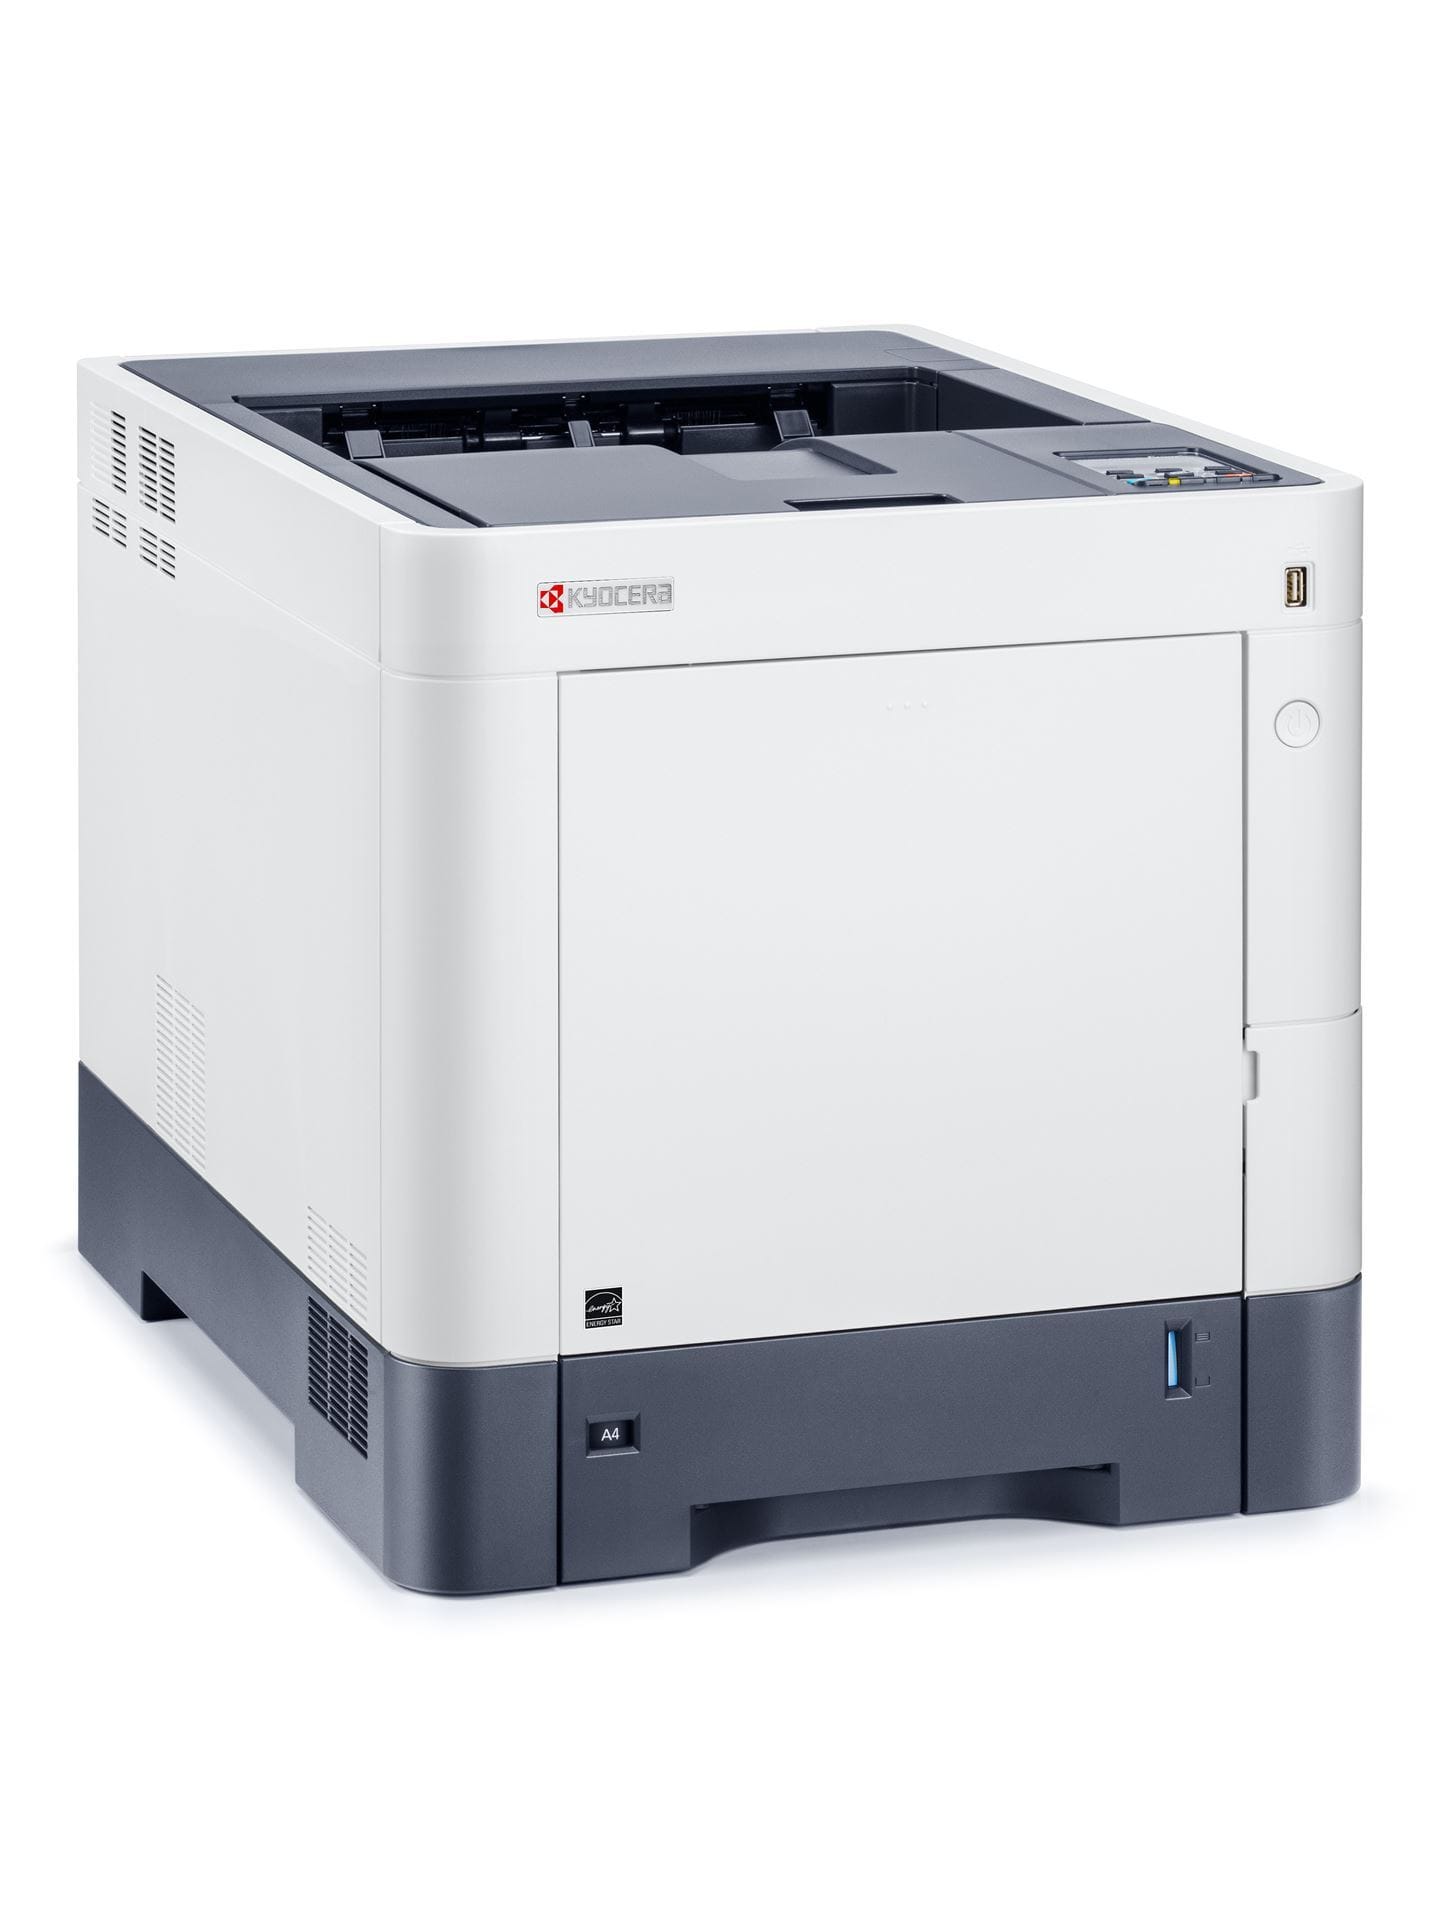 Цветной Лазерный принтер Kyocera P6230cdn (A4, 1200 dpi, 1024 Mb, 30 ppm,  дуплекс, USB 2.0, Gigabit Ethernet) продажа только с дополнительным тонером-25302